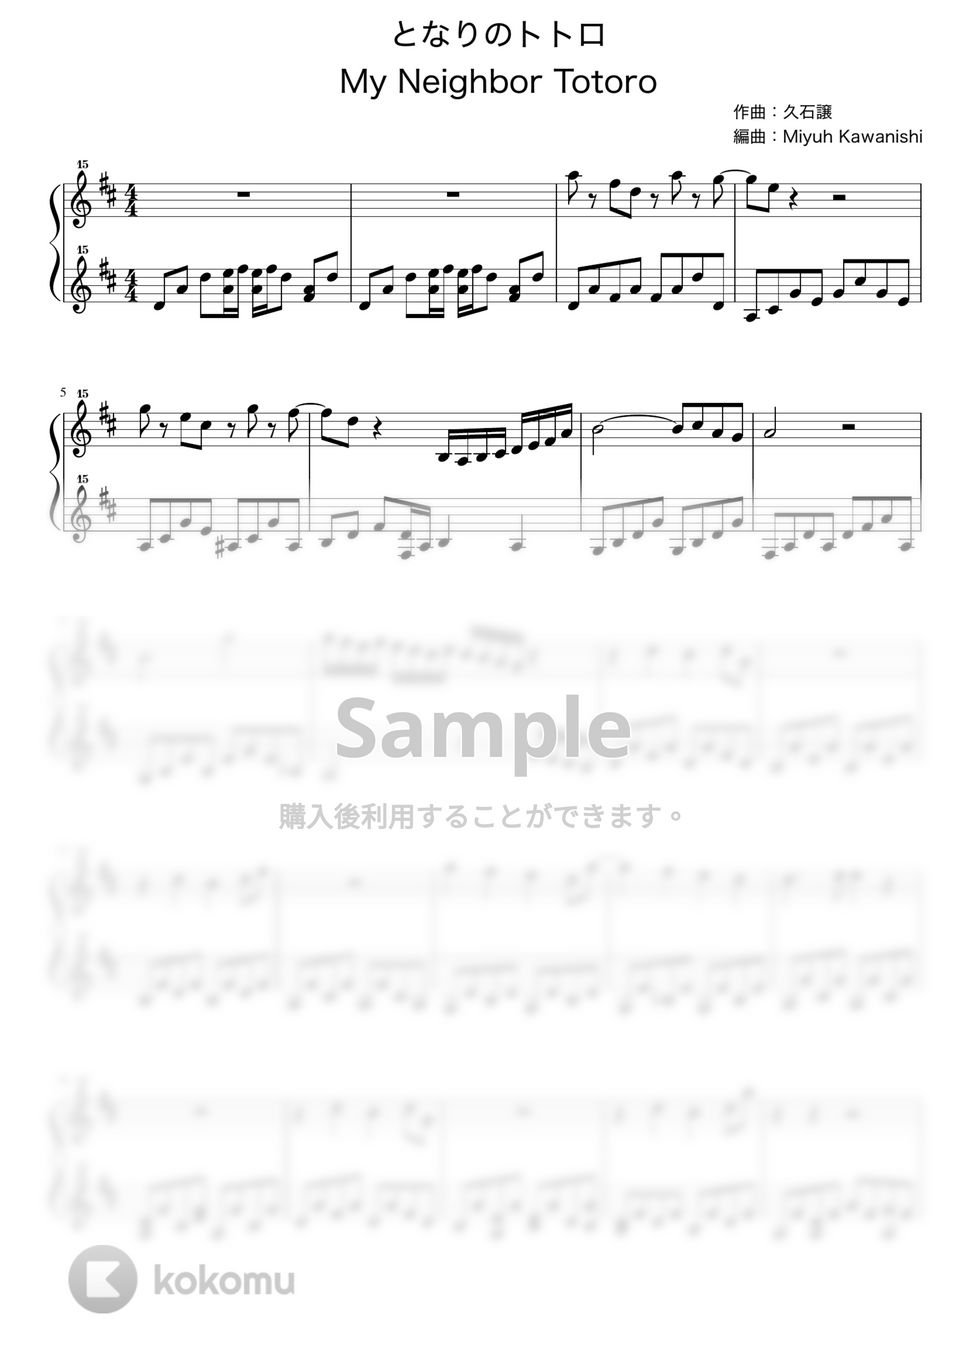 久石譲 - となりのトトロ (となりのトトロ / トイピアノ / 32鍵盤) by 川西三裕